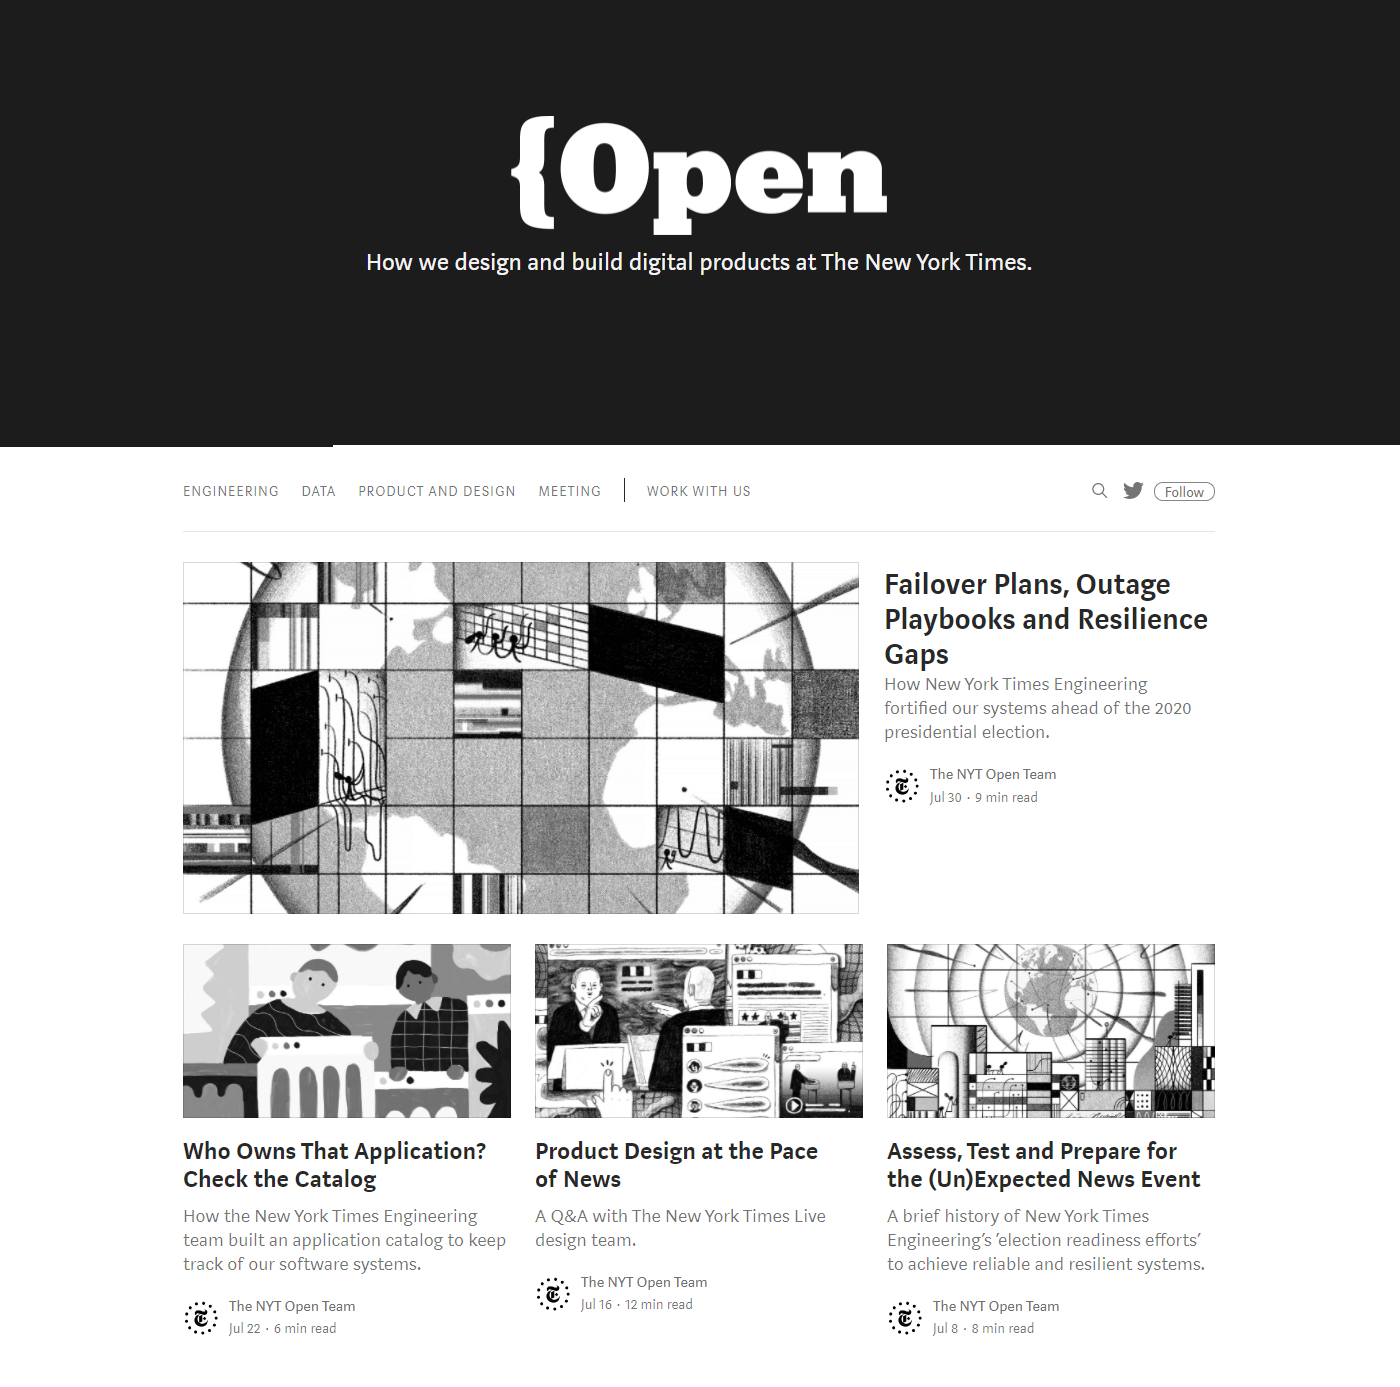 纽约时报微型网站 Open 的主页。